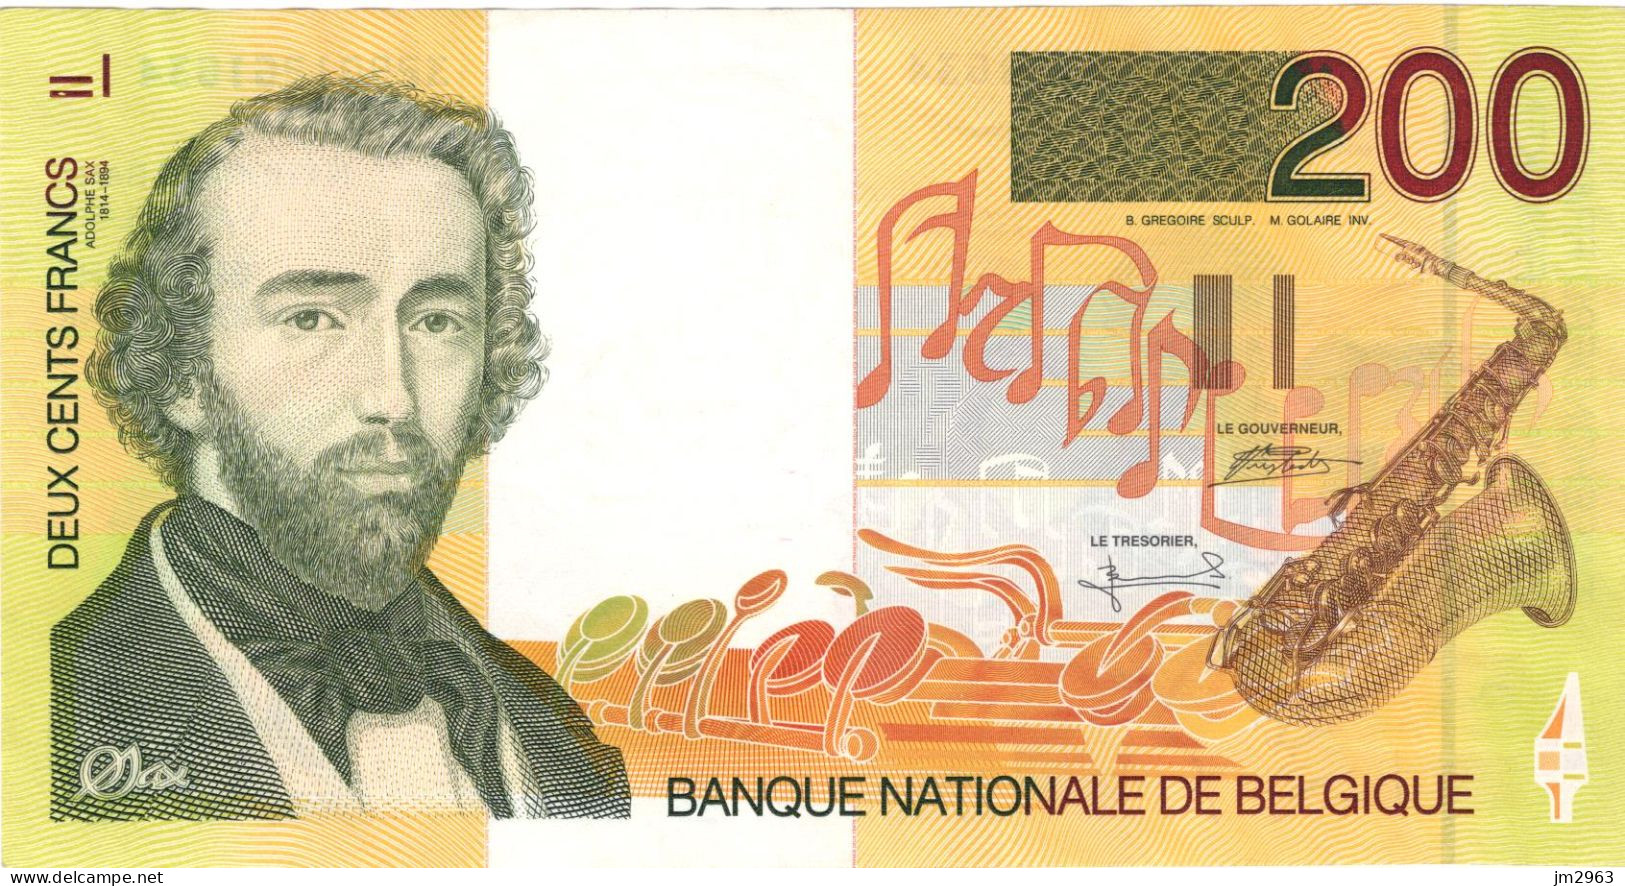 BELGIQUE 200 Francs 1995 UNC 32901261634 - Other & Unclassified